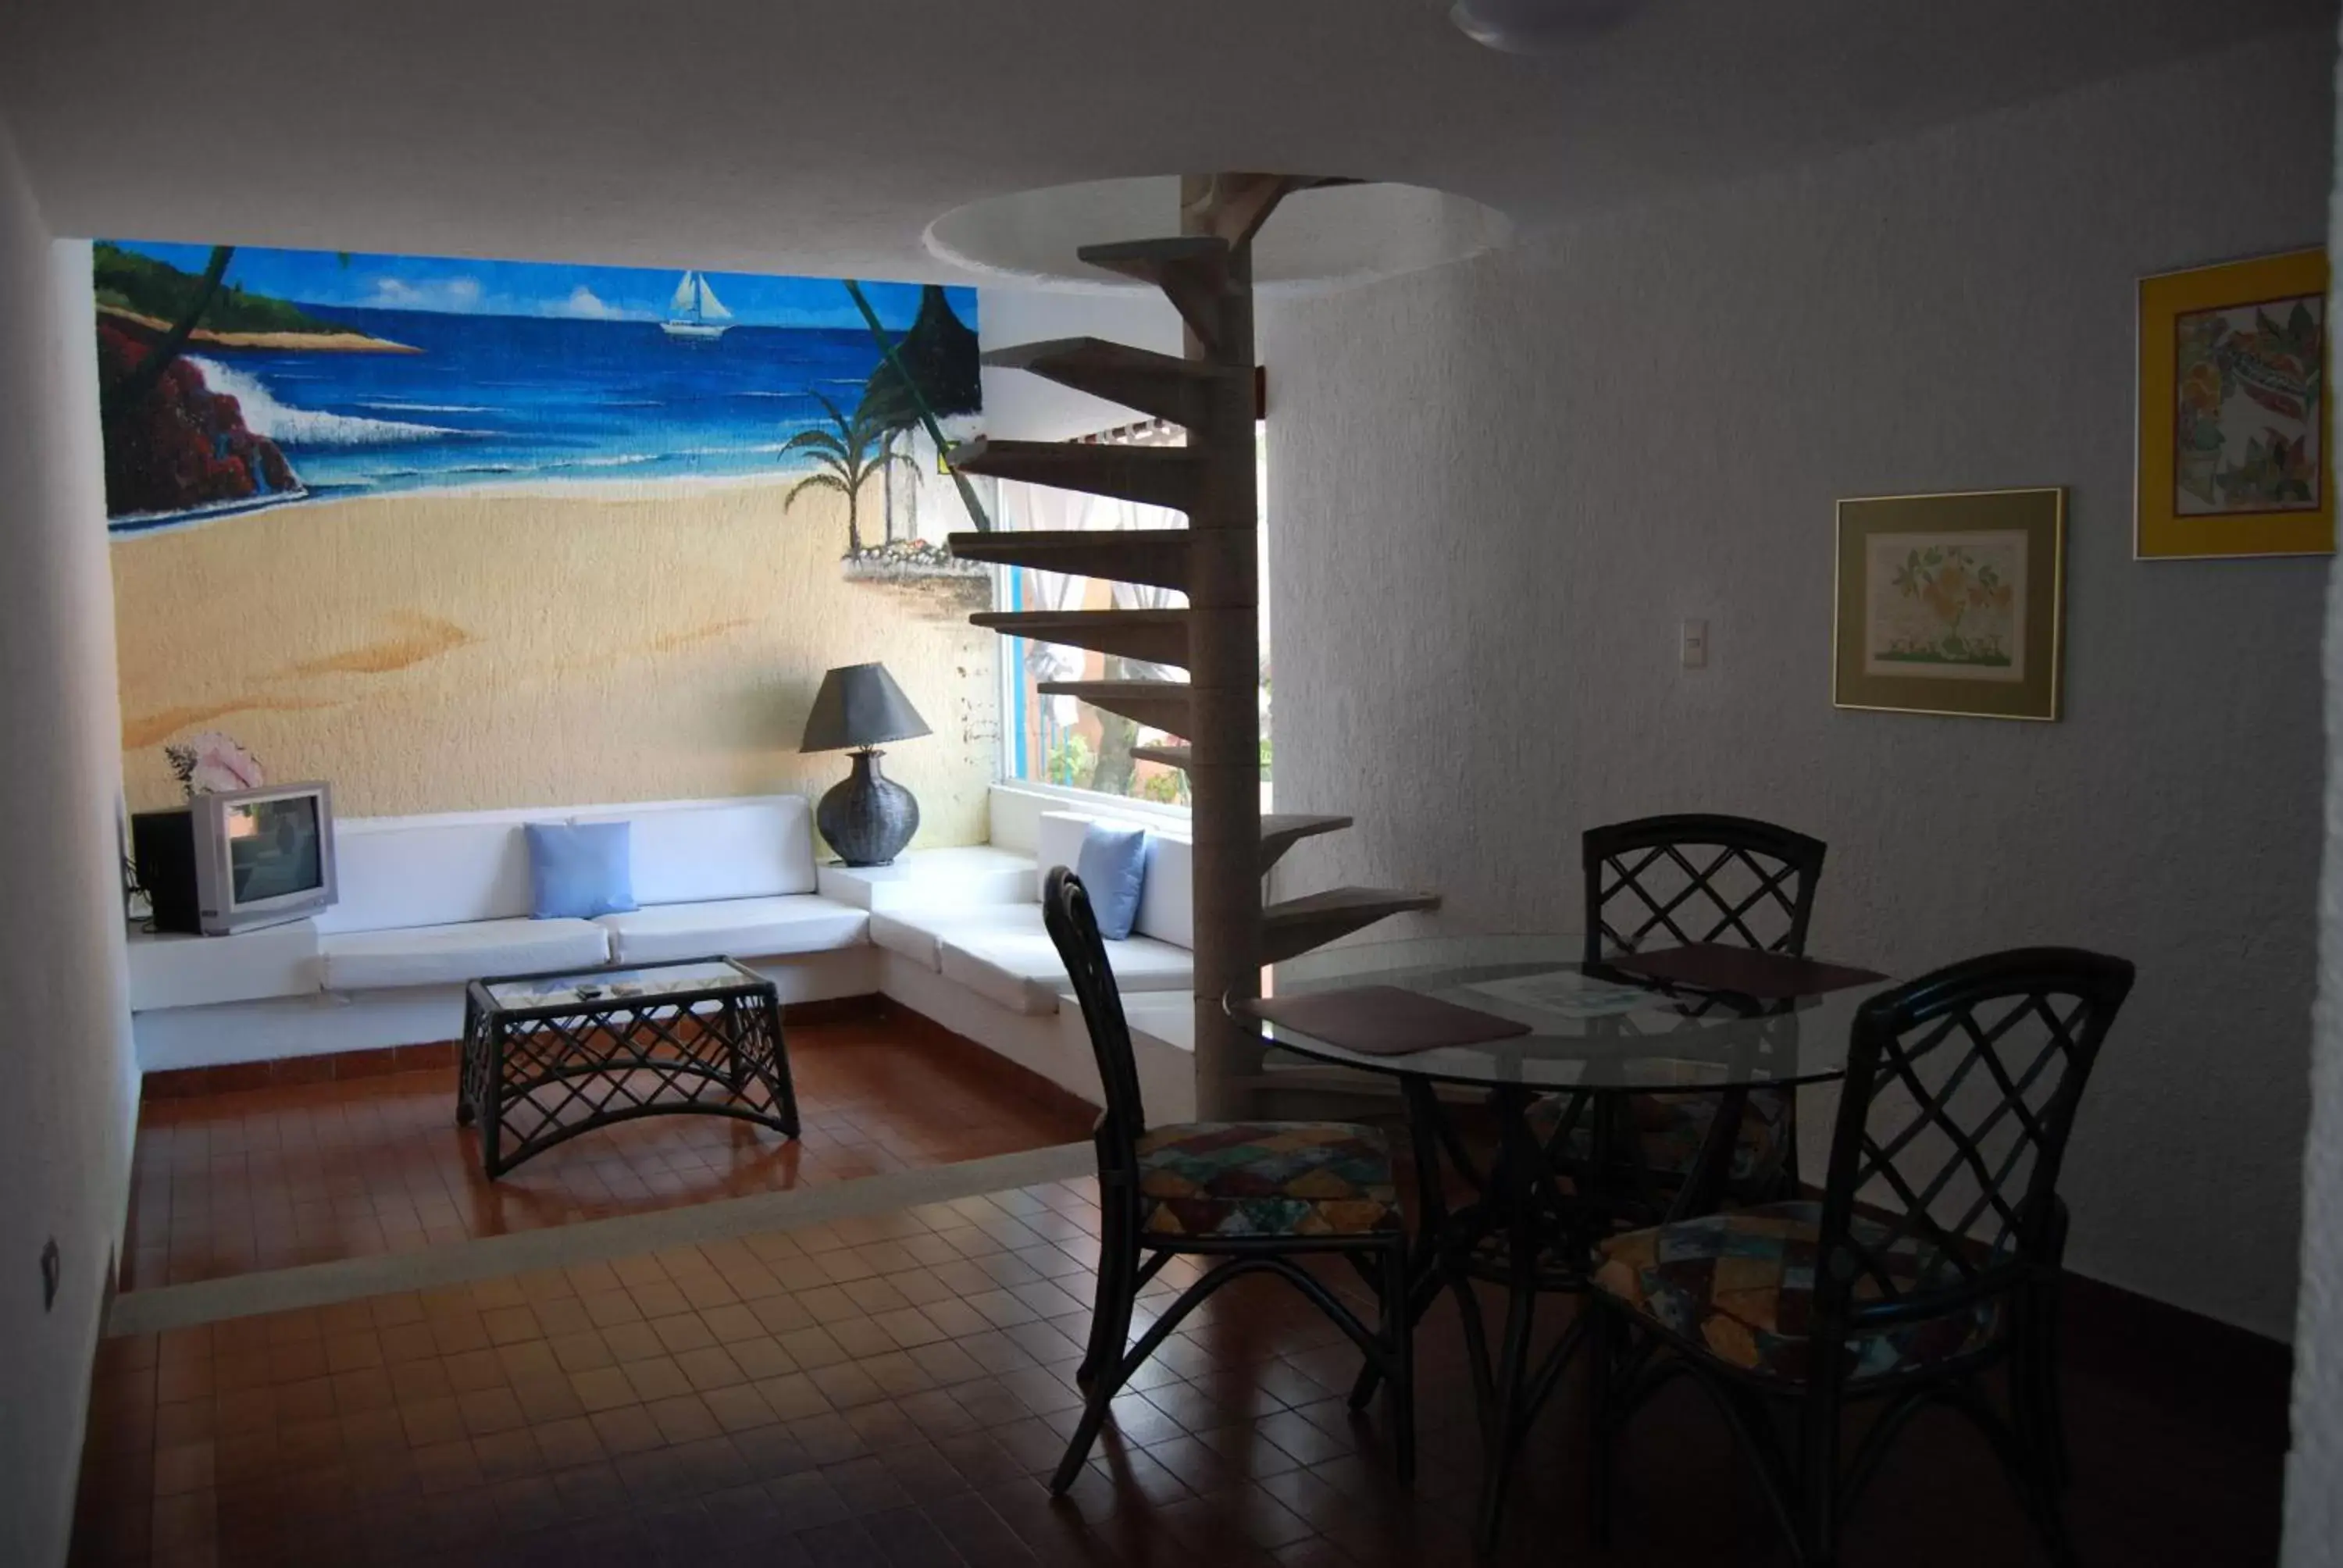 Decorative detail, Dining Area in Hotel Villas Las Anclas